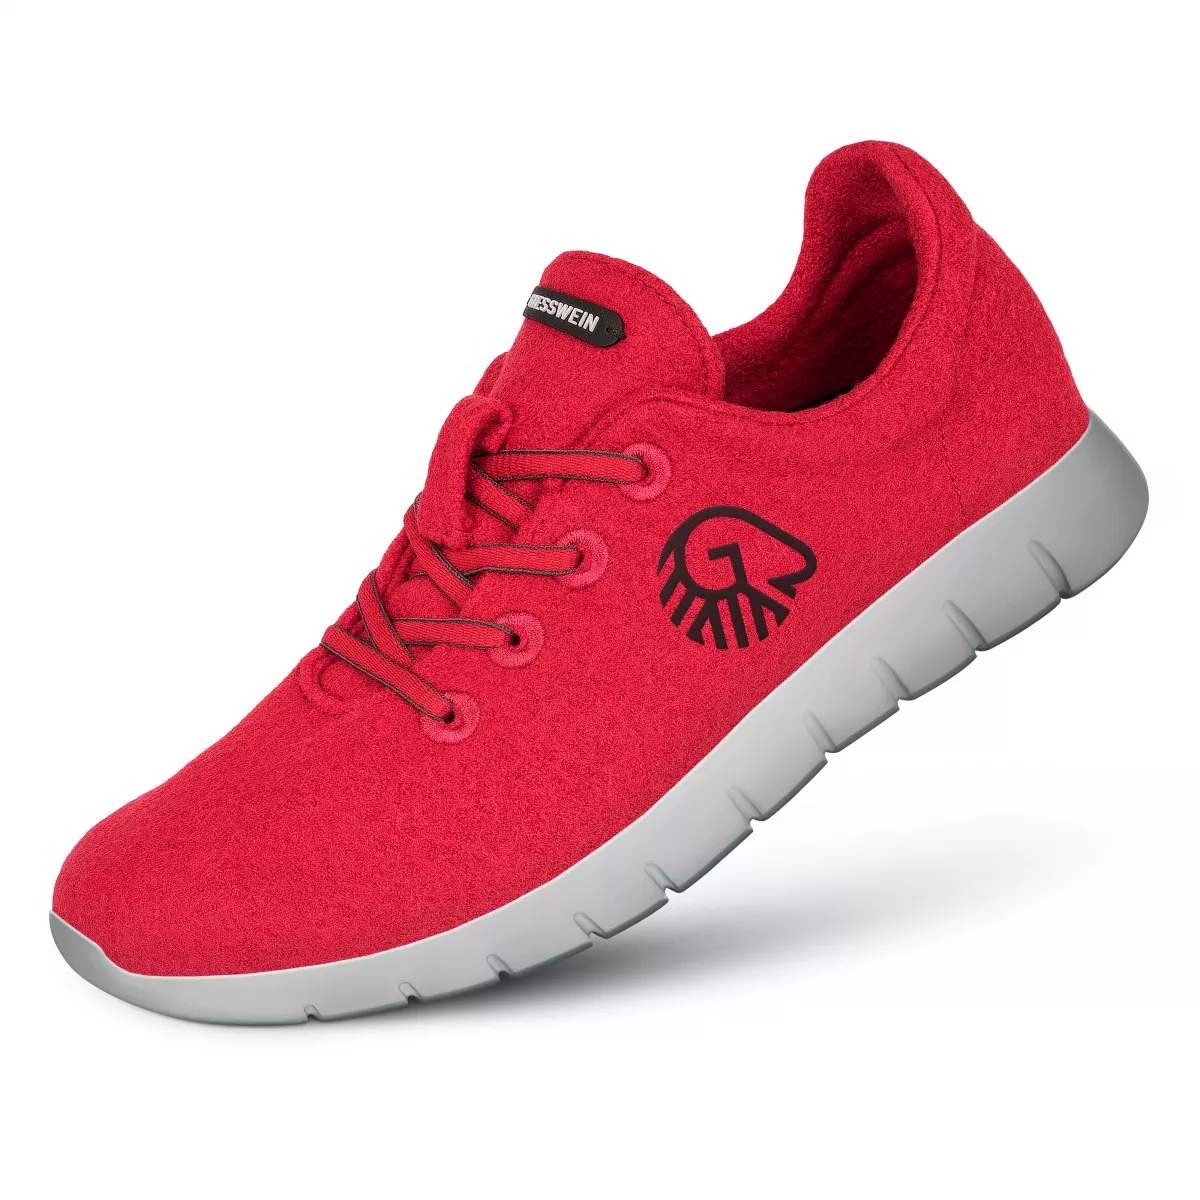 Pantofi barbati Merino Runners rosu 41